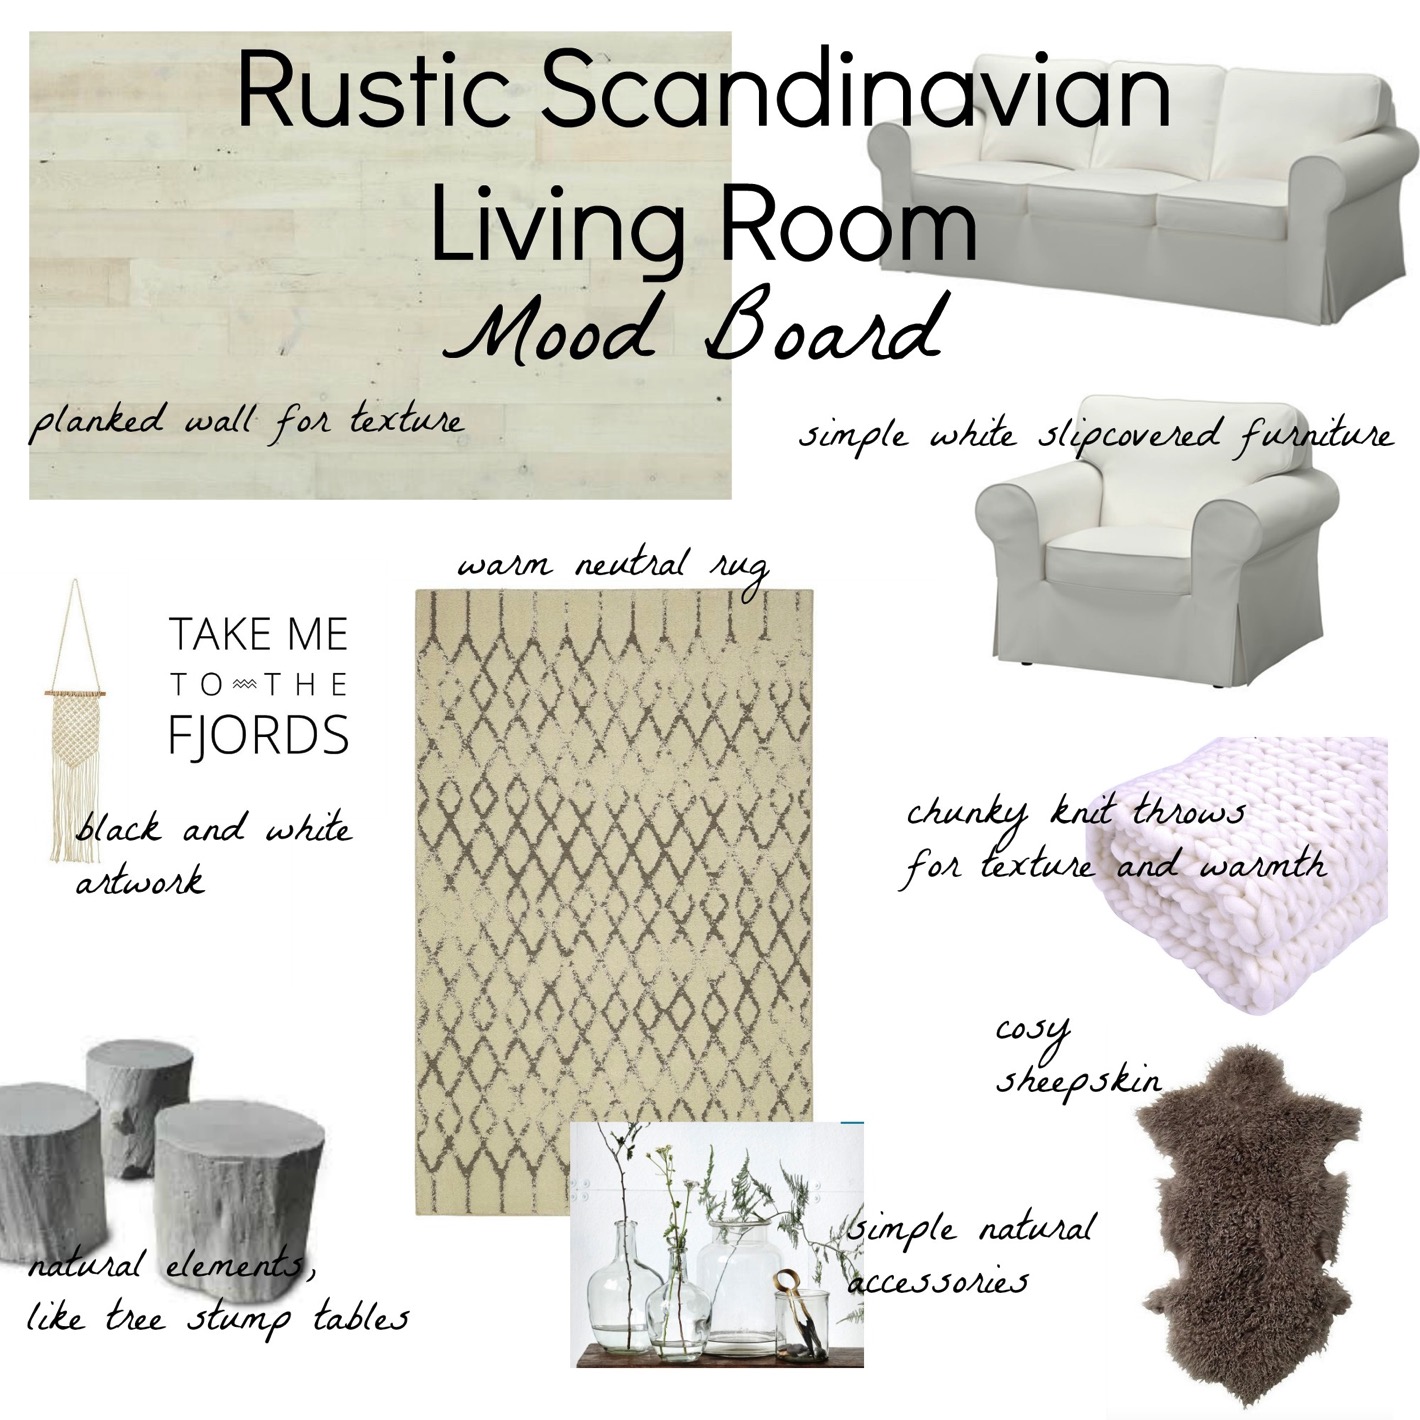 Rustic Scandinavian Living Room Mood Board